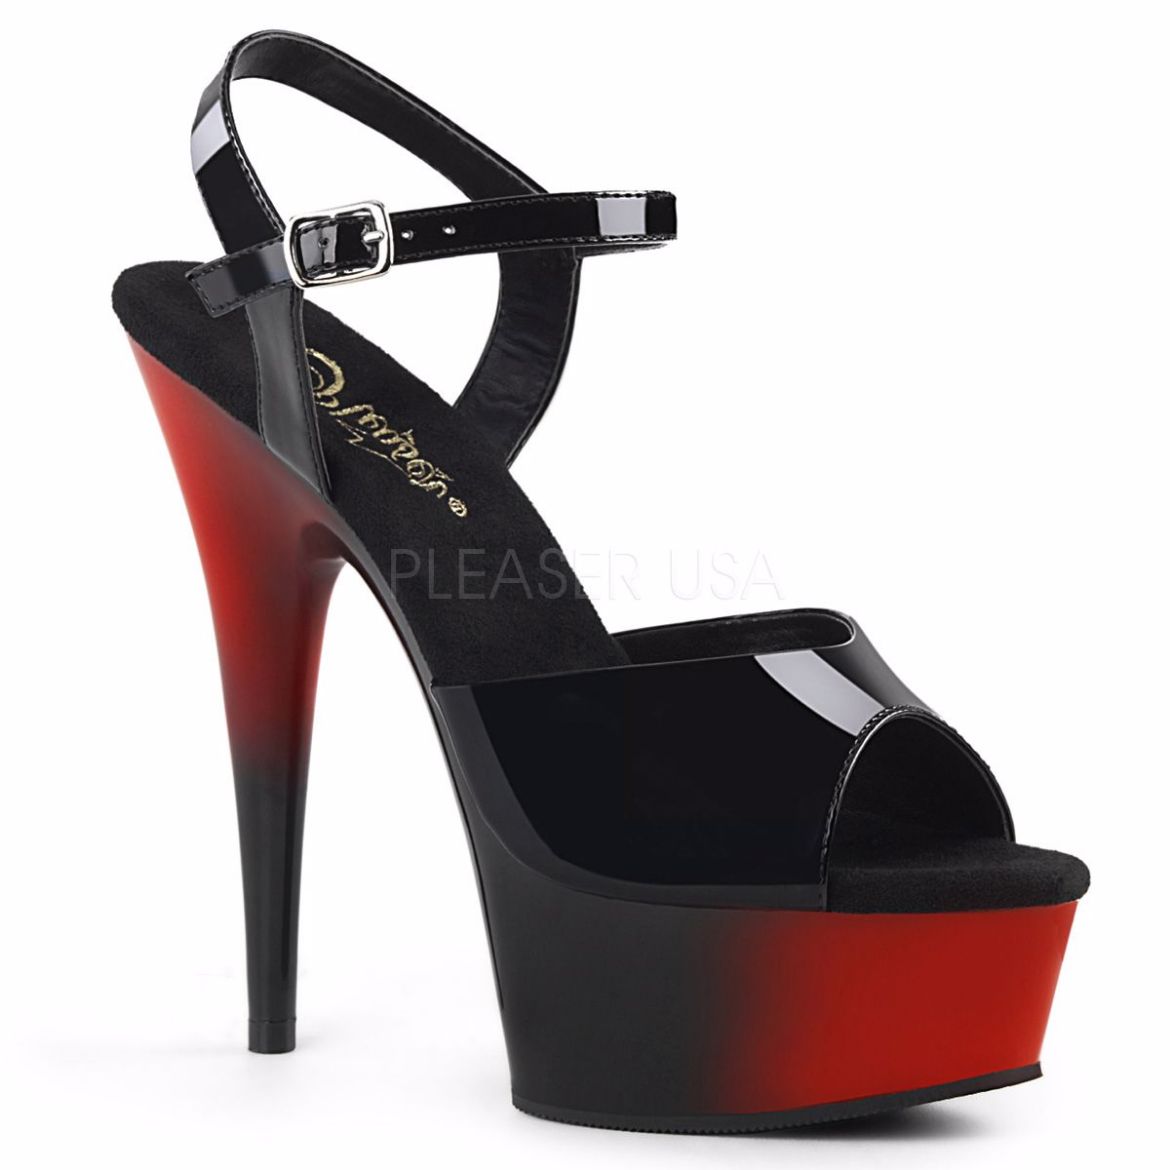 Product image of Pleaser Delight-609Br Black Patent/Red-Black, 6 inch (15.2 cm) Heel, 1 3/4 inch (4.4 cm) Platform Sandal Shoes